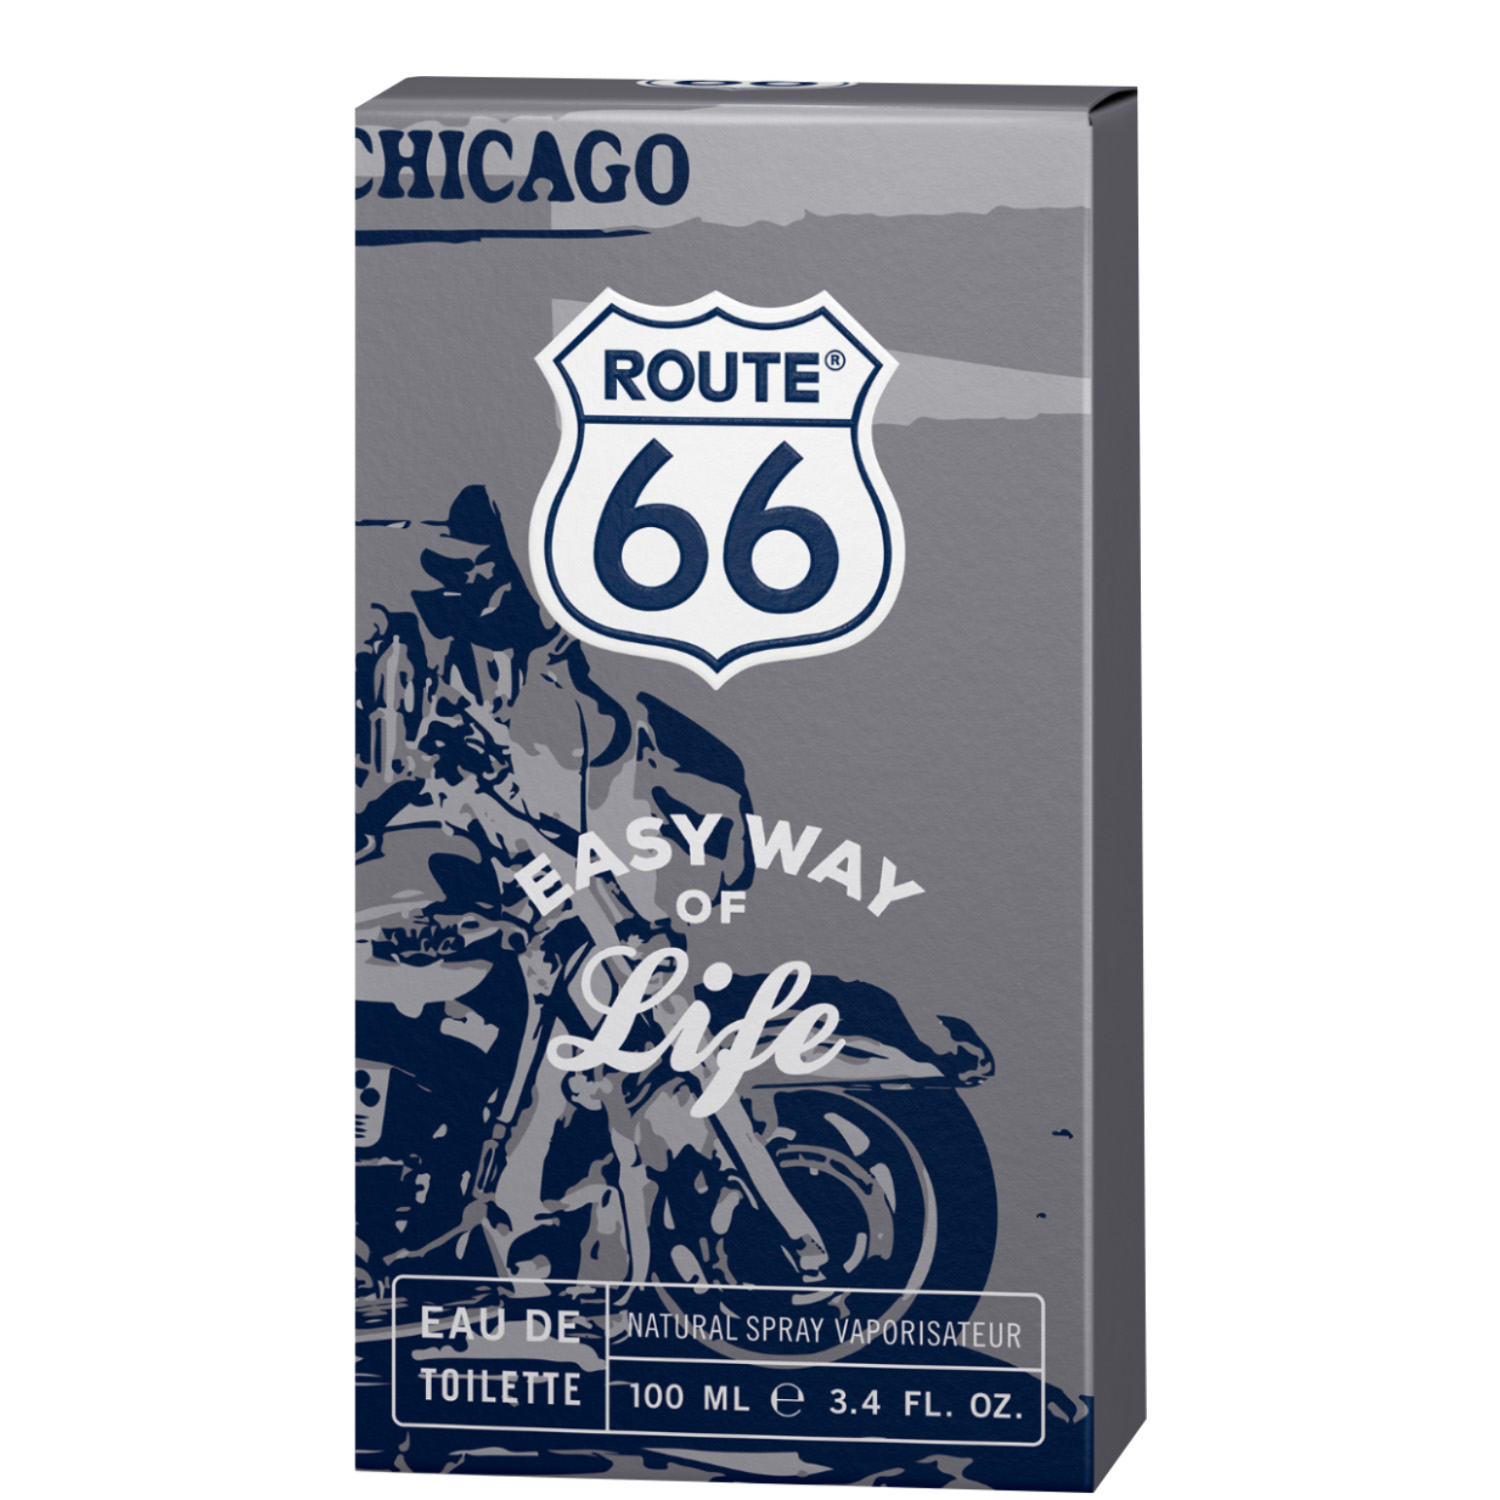 Route 66 Easy Way of Life Eau de Toilette 100ml